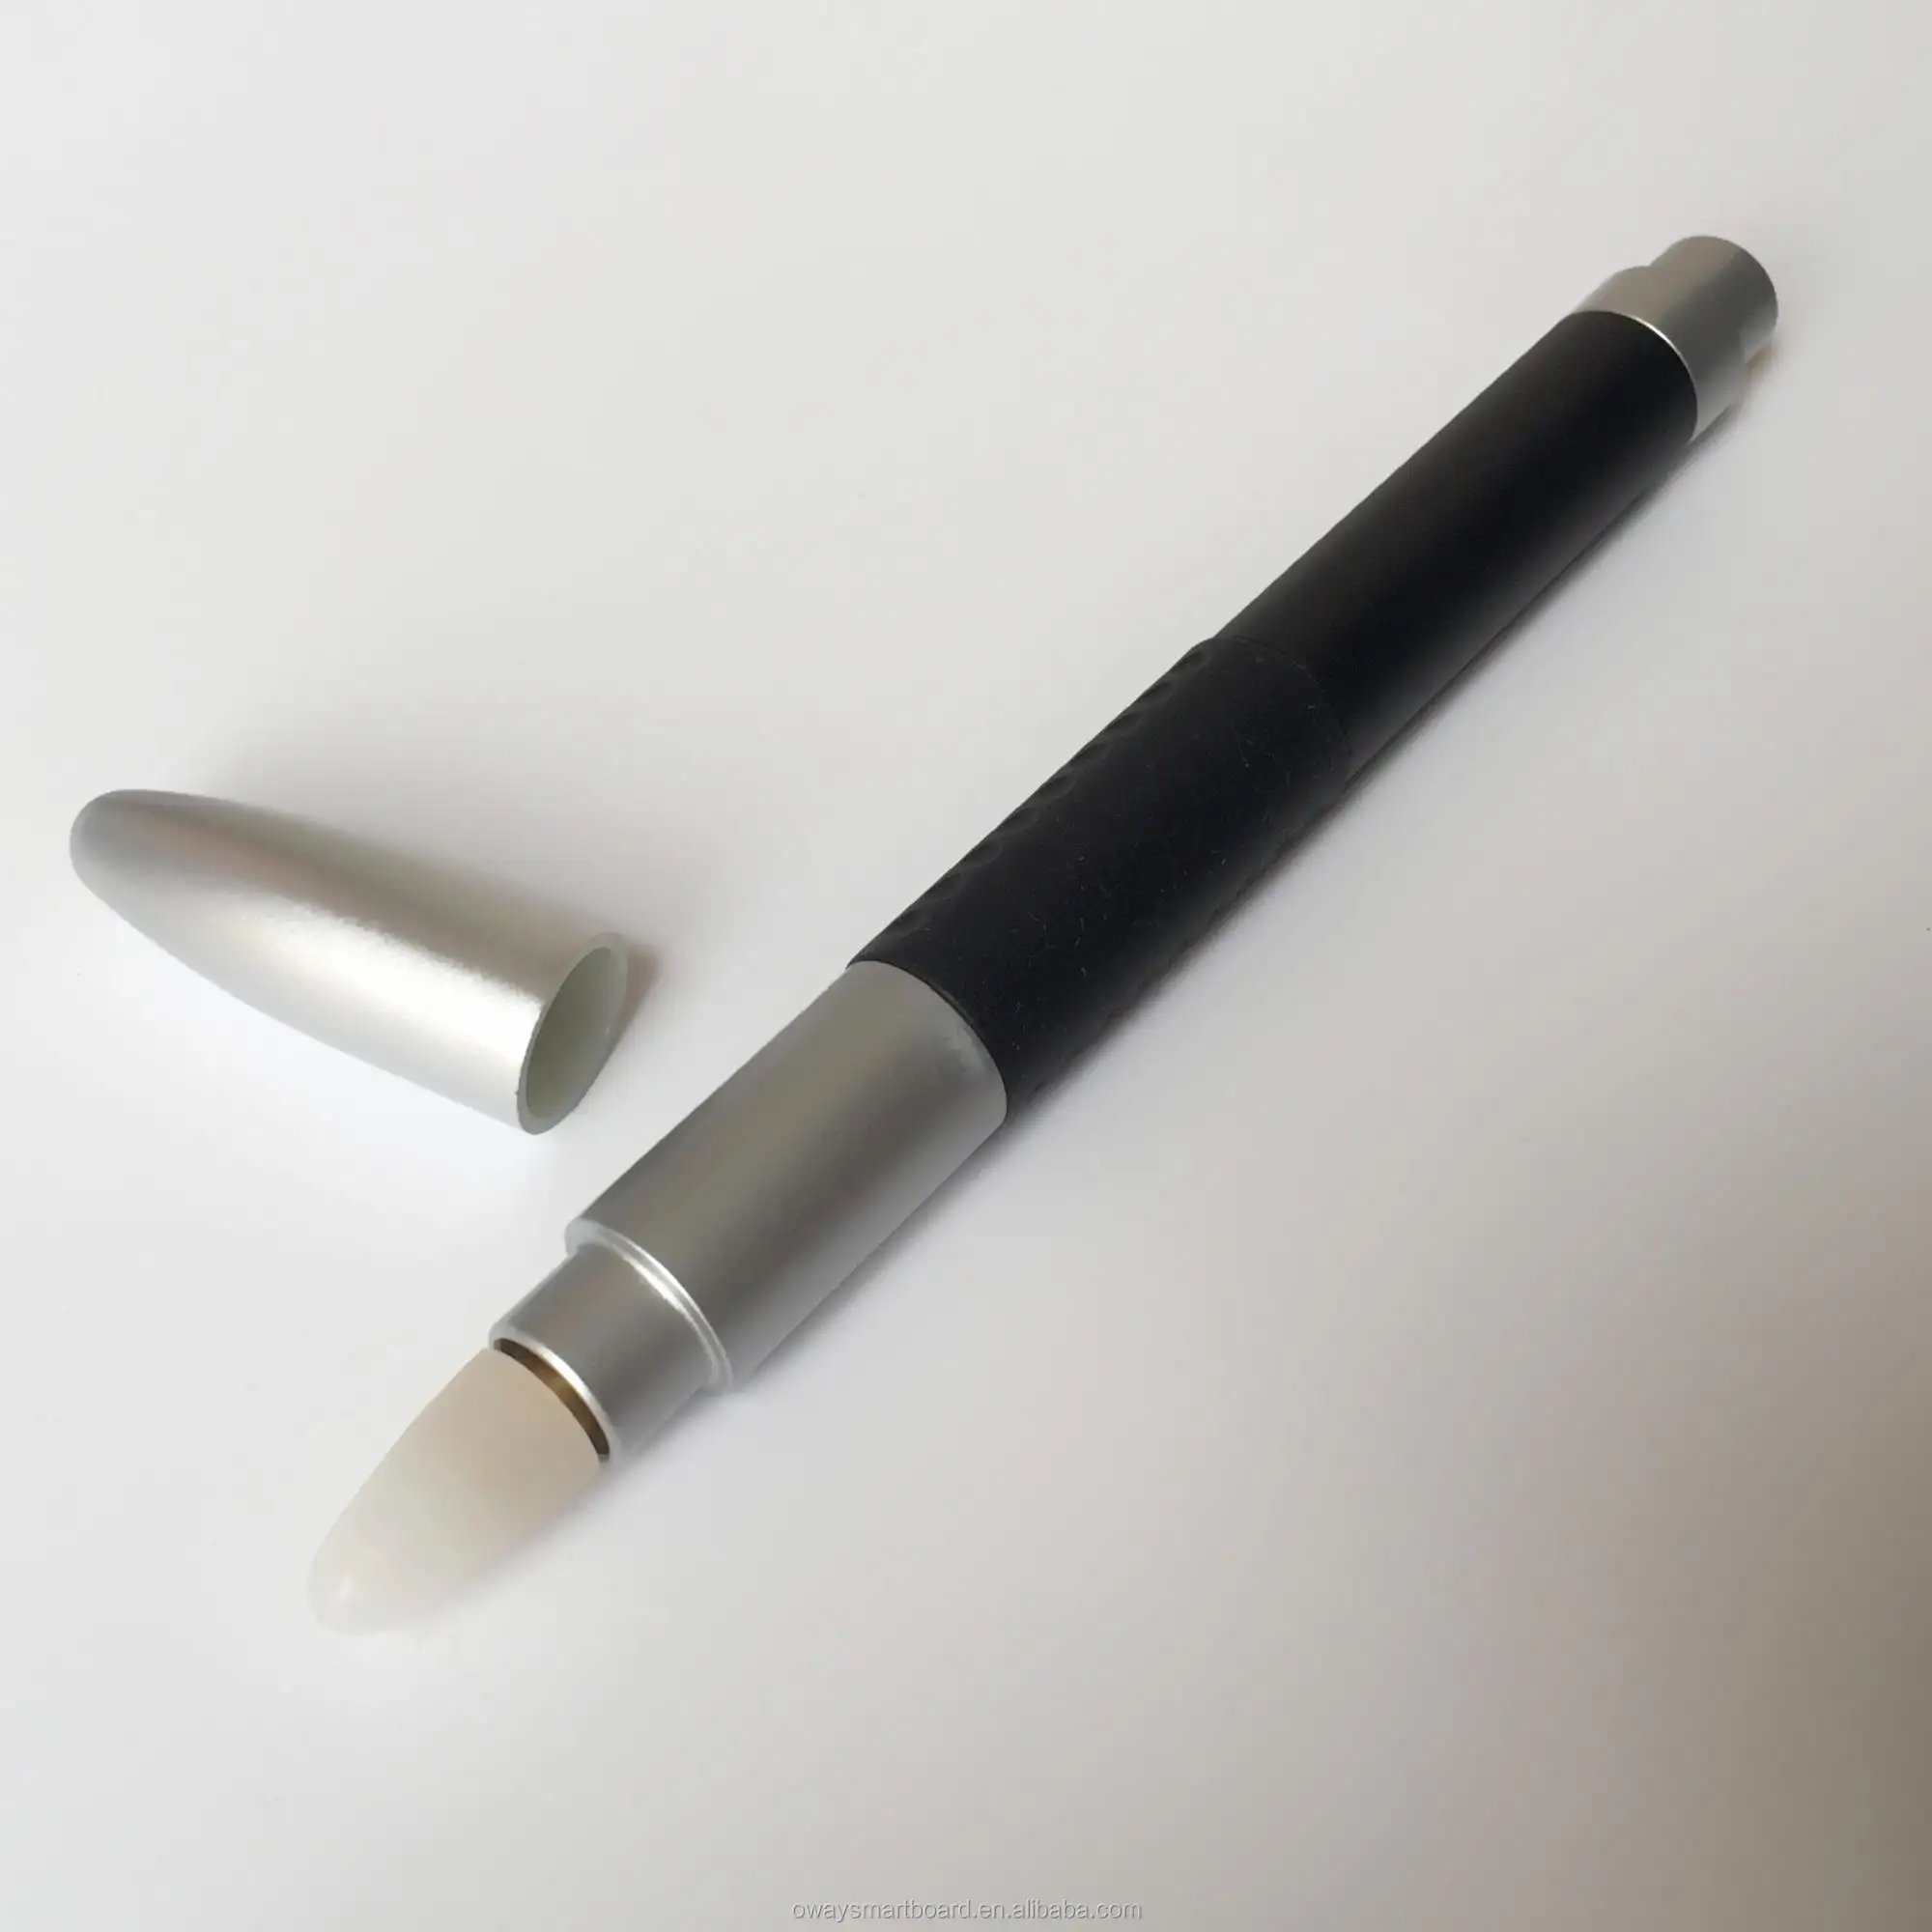 Penna a infrarossi a lunghezza d'onda 940nm per lavagna interattiva con penna IR personalizzata OEM per smart board, luce, lunga durata e-pen